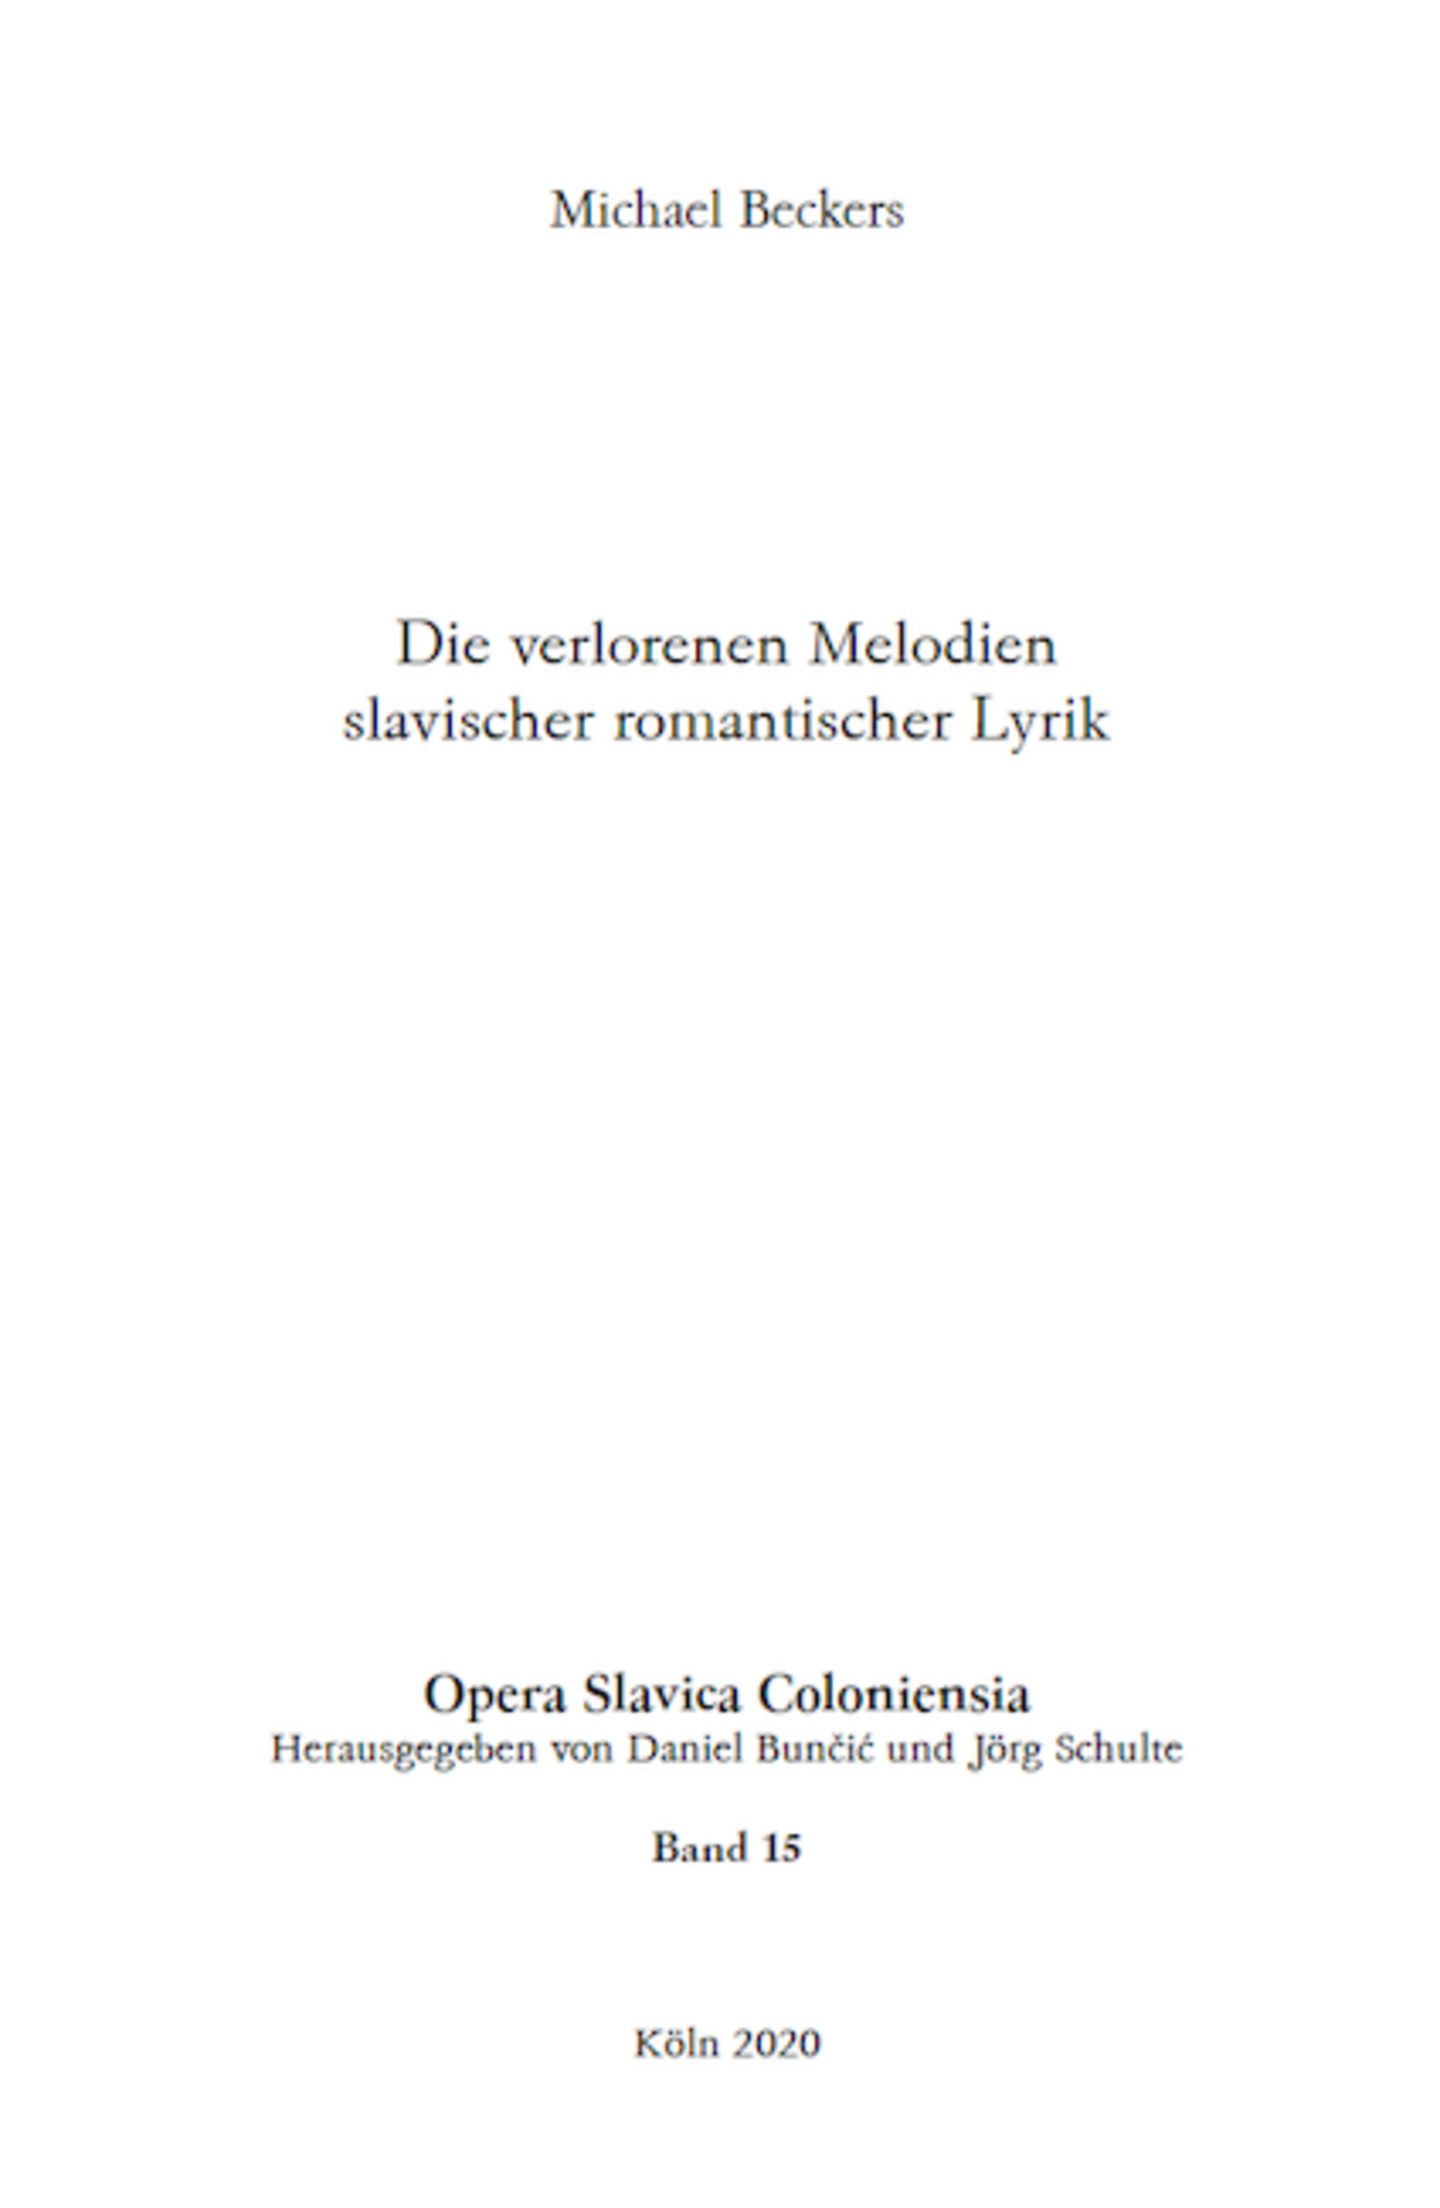 Opera Slavica Coloniensia, Bd. 15: Michael Beckers (2020) Die verlorenen Melodien slavischer romantischer Lyrik